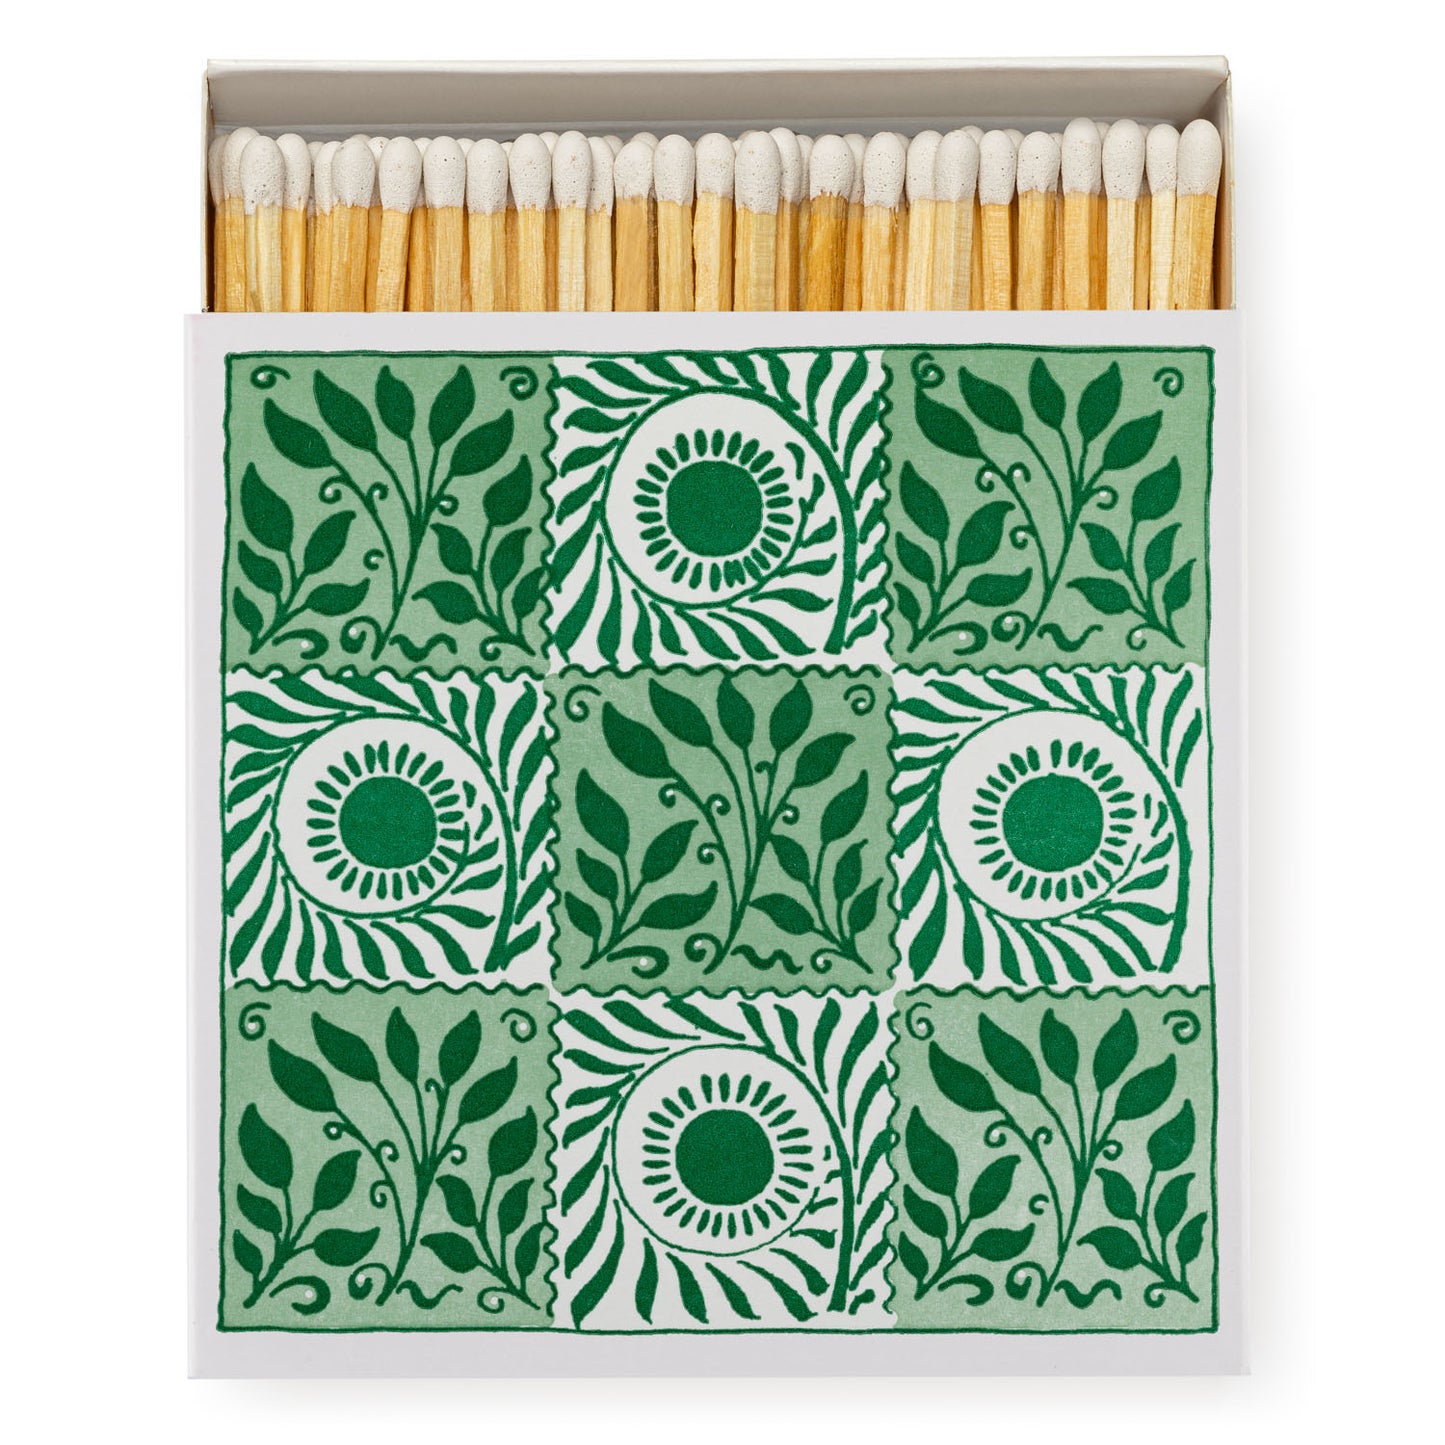 Matches - Green Tiles